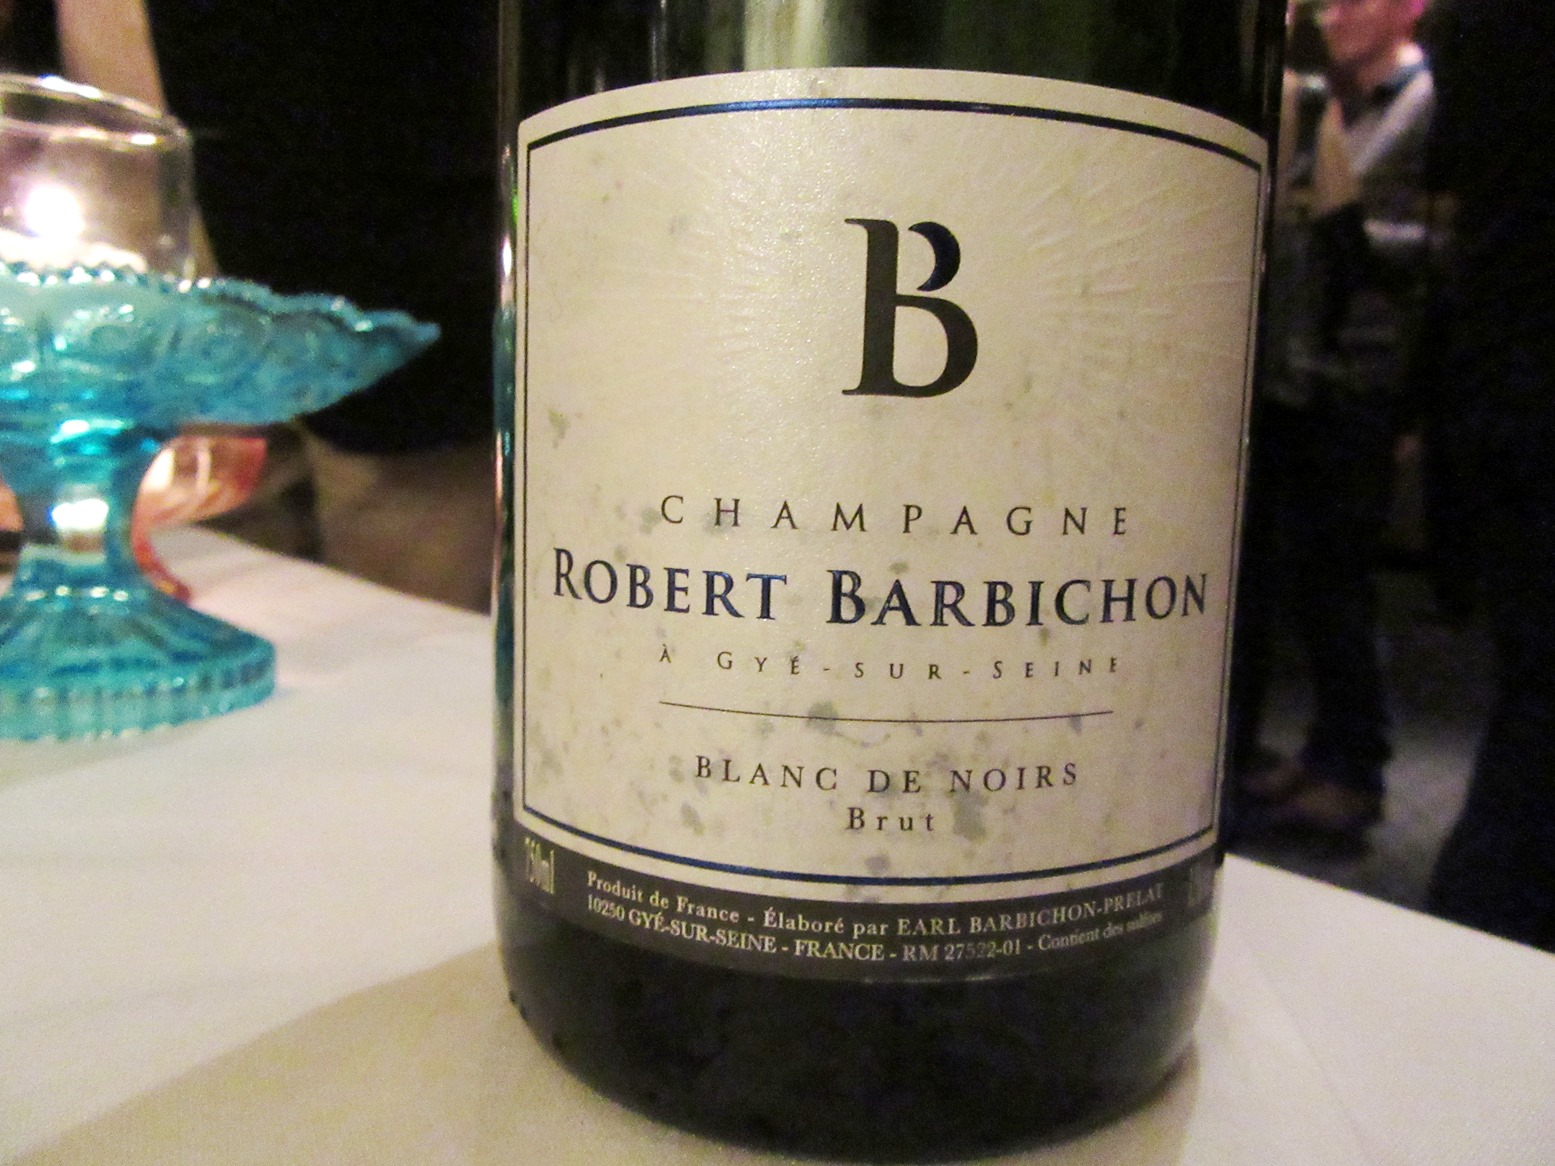 Robert Barbichon Blanc de Noirs Brut NV, Vin Mousseaux Sparkling Wine, À Gyé-Sur-Seine, Champagne, France, Wine Casual